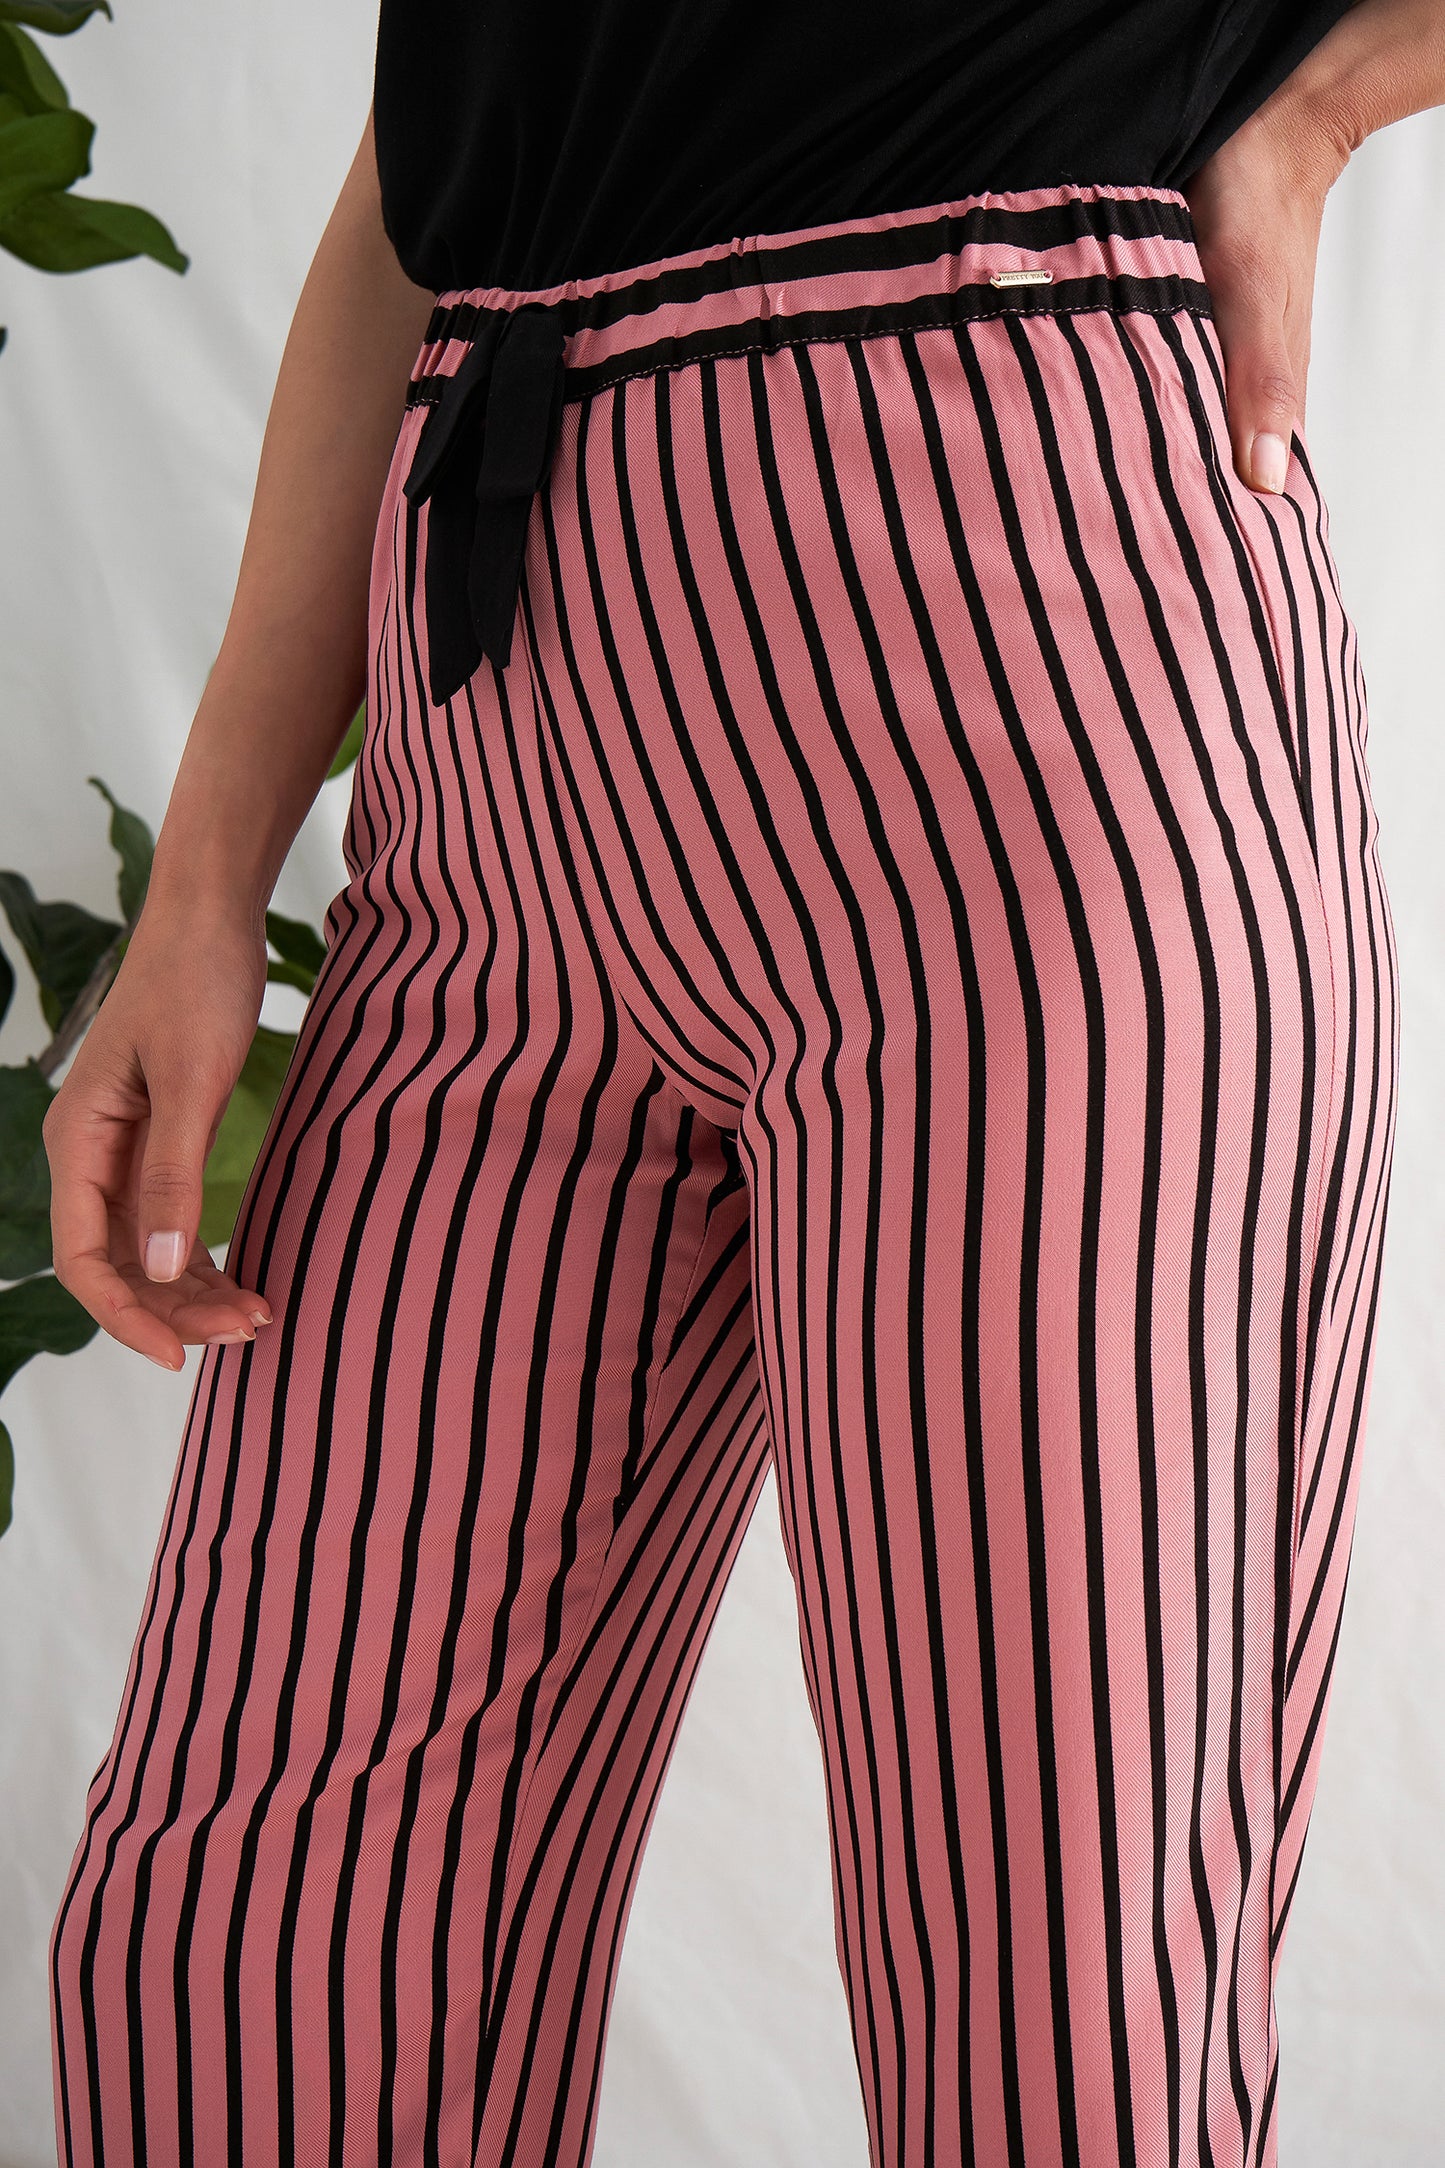 
                  
                    Women's Boyfriend Stripe Trousers in Terracotta and Black from Pretty You London
                  
                